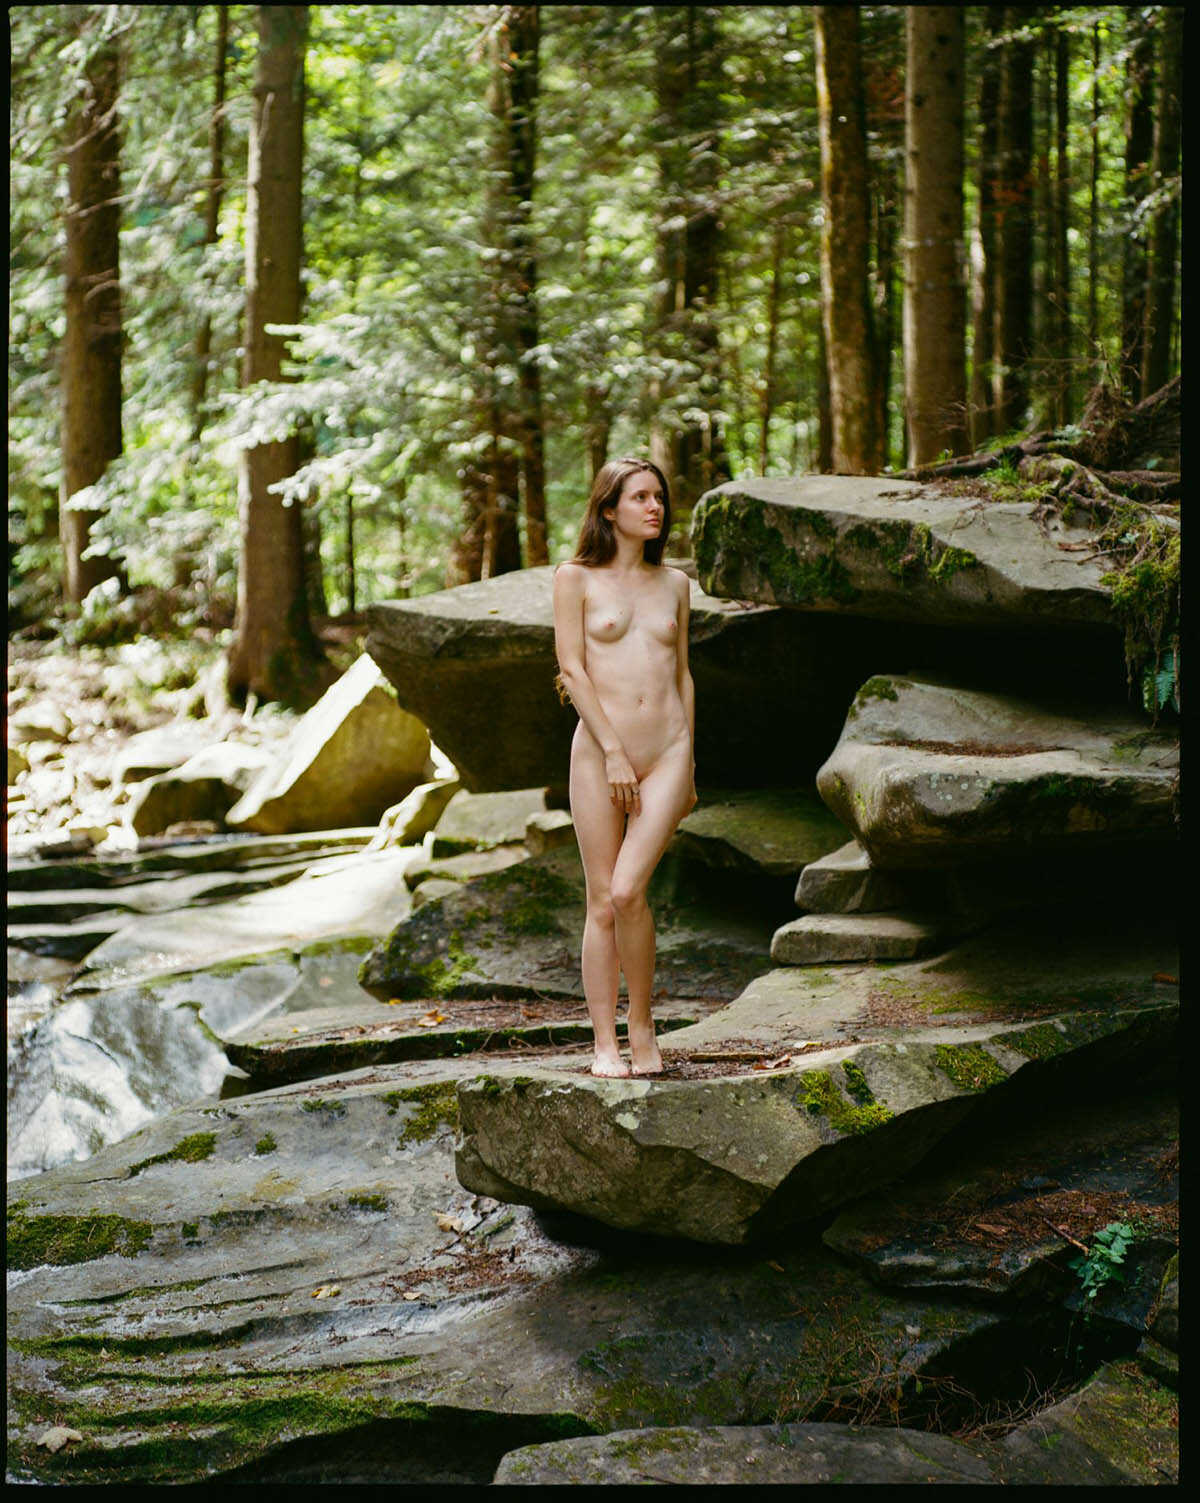 Γυμνές φωτογραφίες στην φύση με το μοντέλο Ivanka